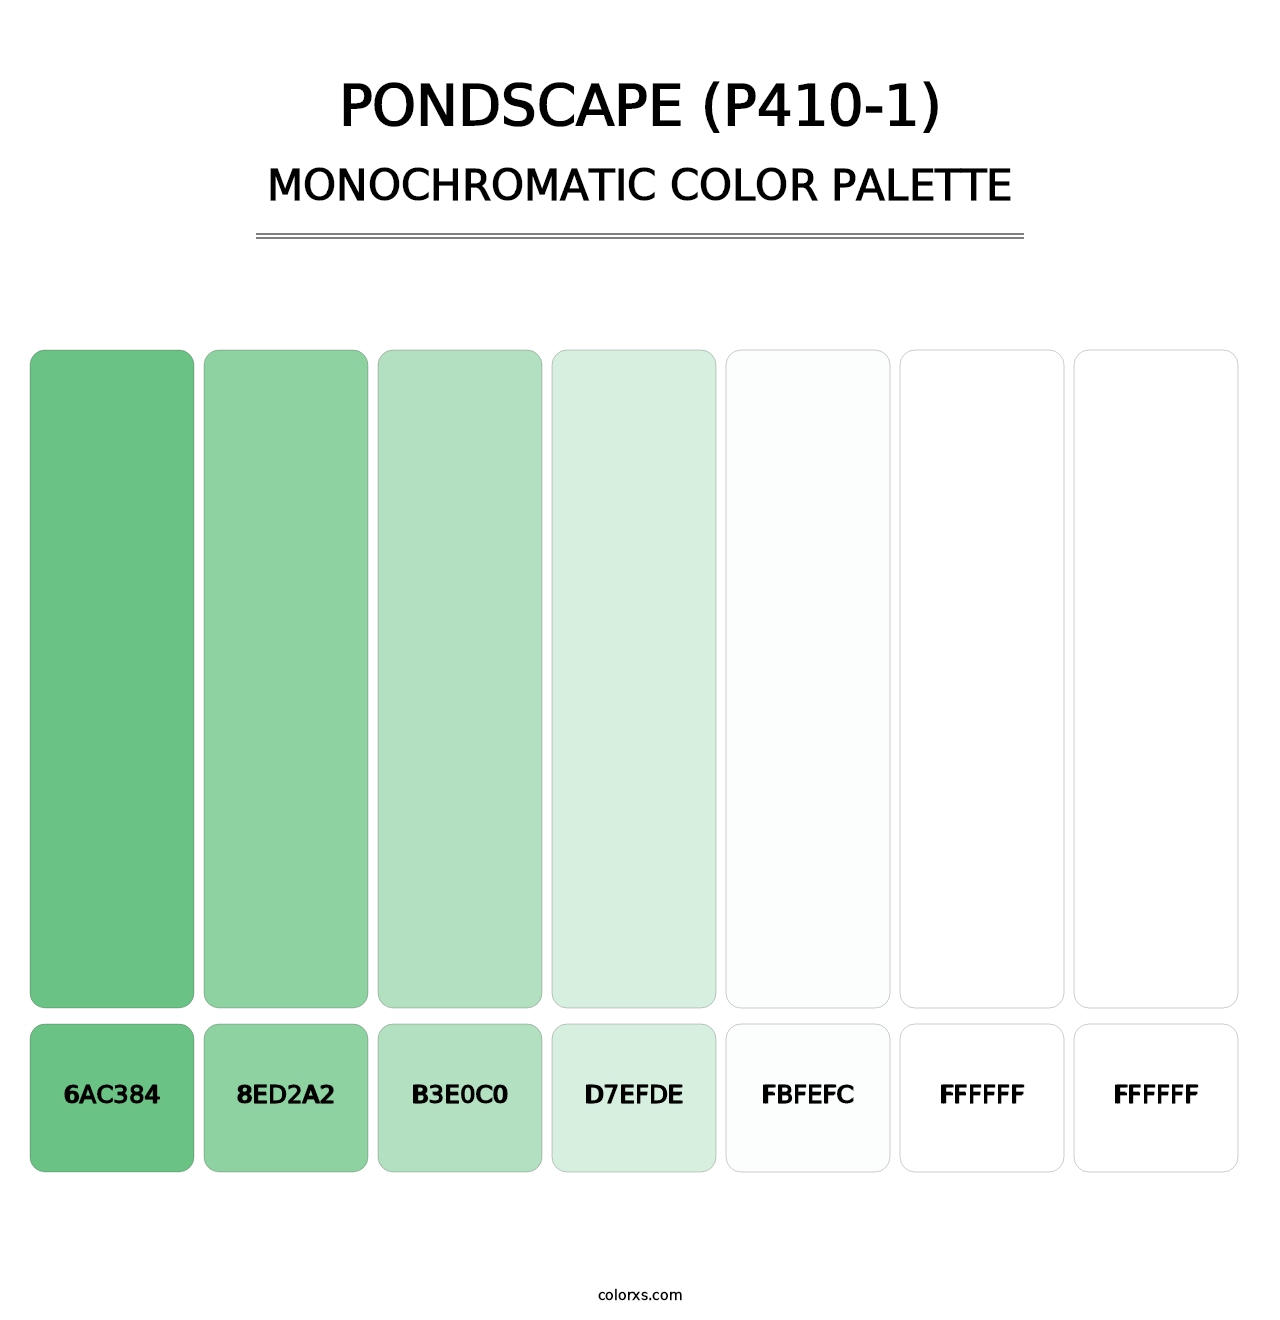 Pondscape (P410-1) - Monochromatic Color Palette